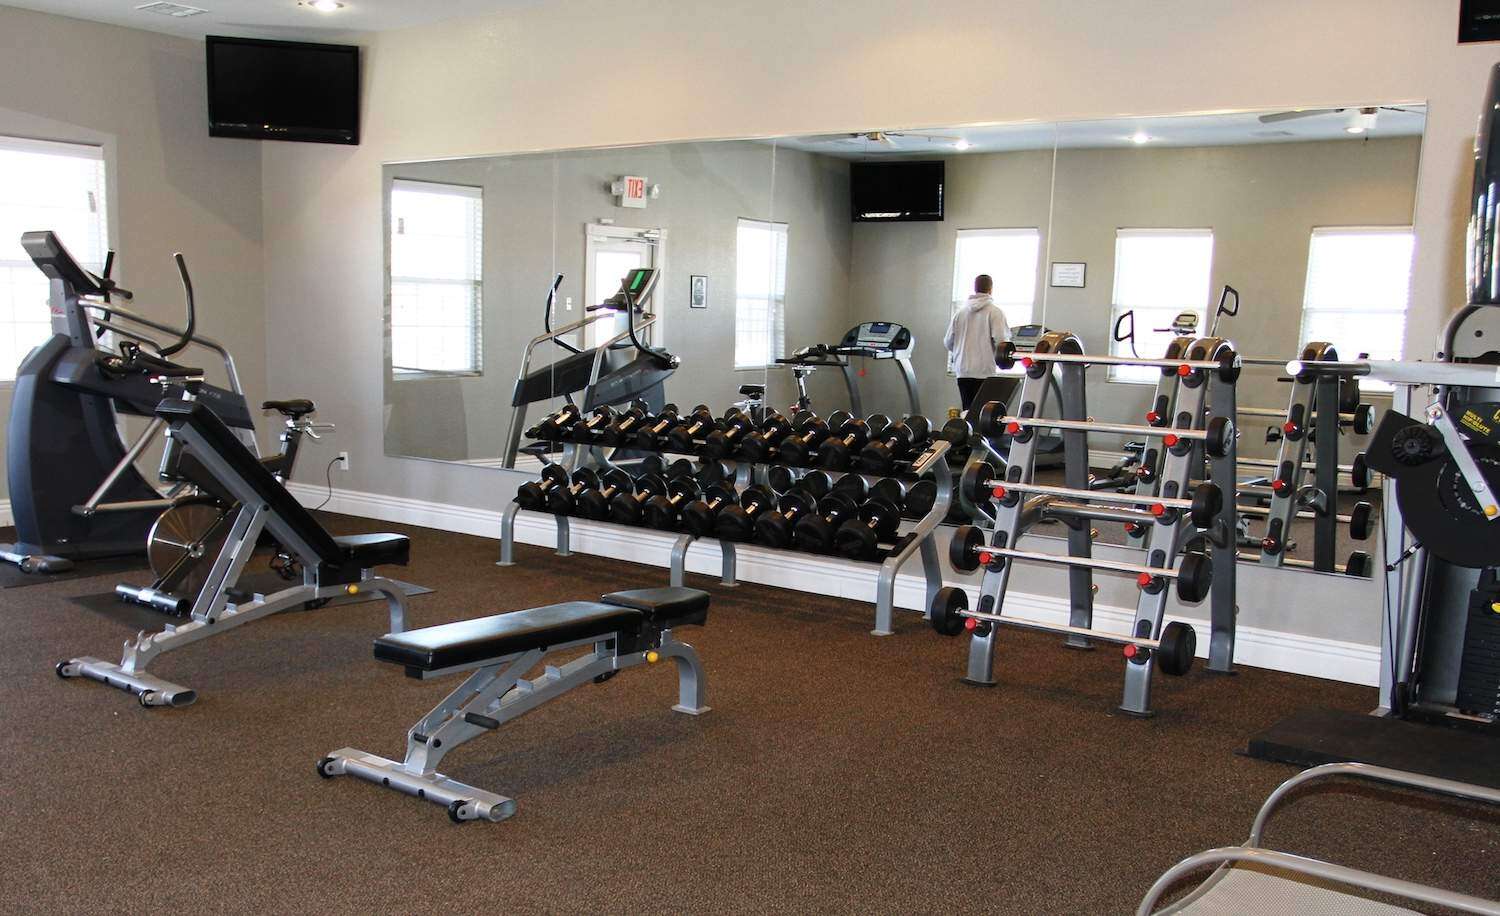 Full view of fitness center.